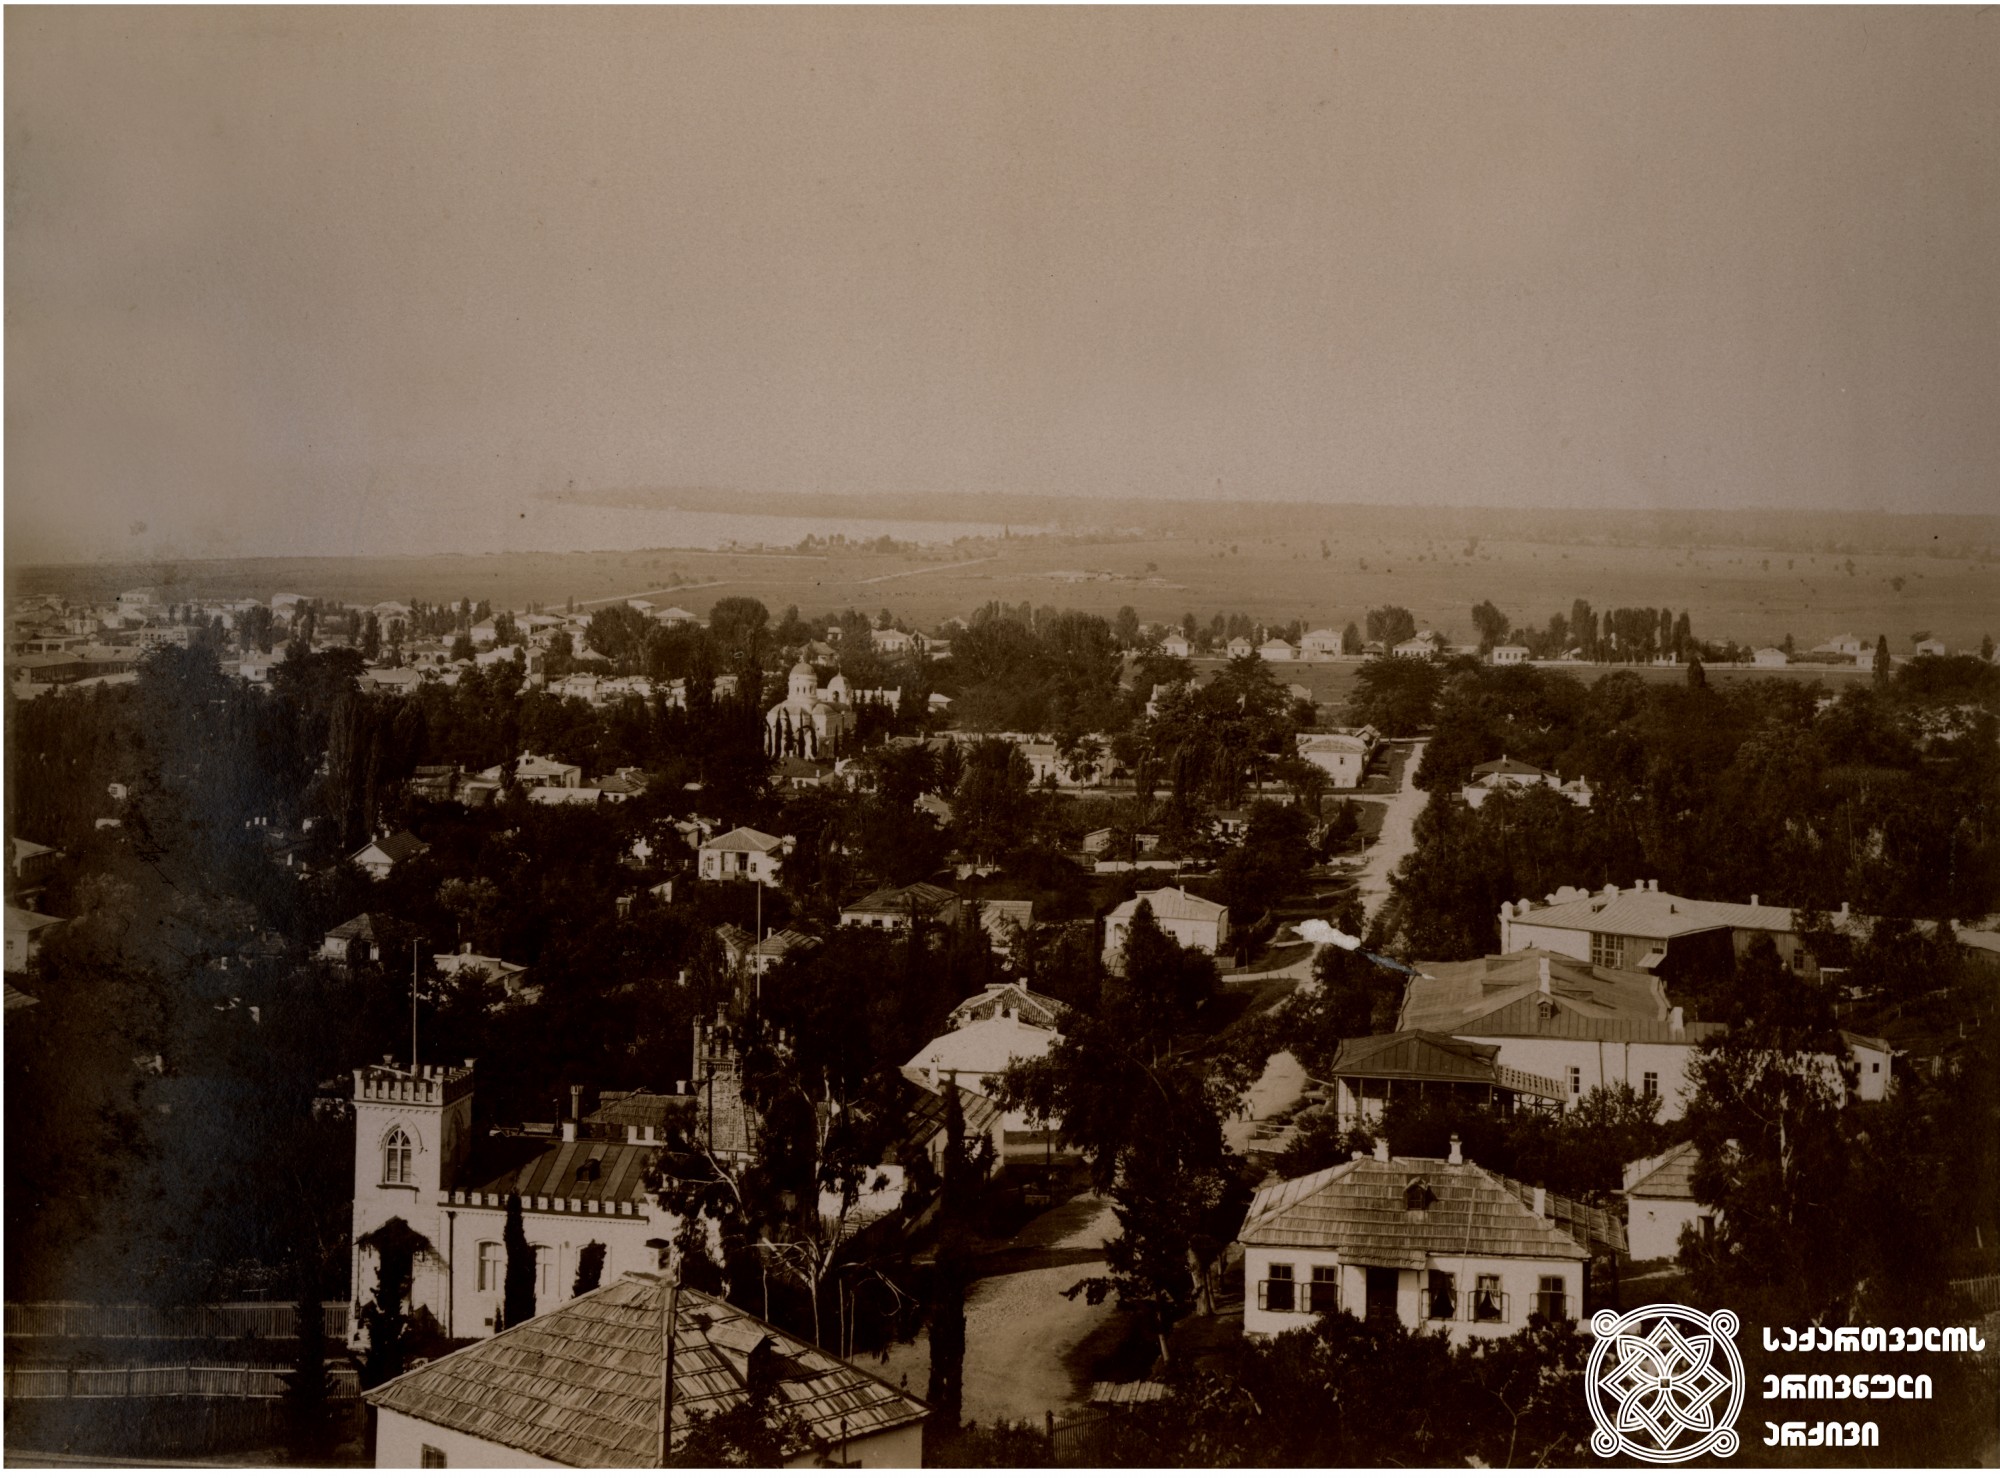 სოხუმ-კალე, ხედი ქალაქზე. <br>
ფოტო: დიმიტრი ერმაკოვის კოლექციიდან. <br>
[1890-1900]. <br>

Sokhumi-Kale, city view. <br>
Photo from Dmitry Ermakov’s collection. <br>
[1890-1900].